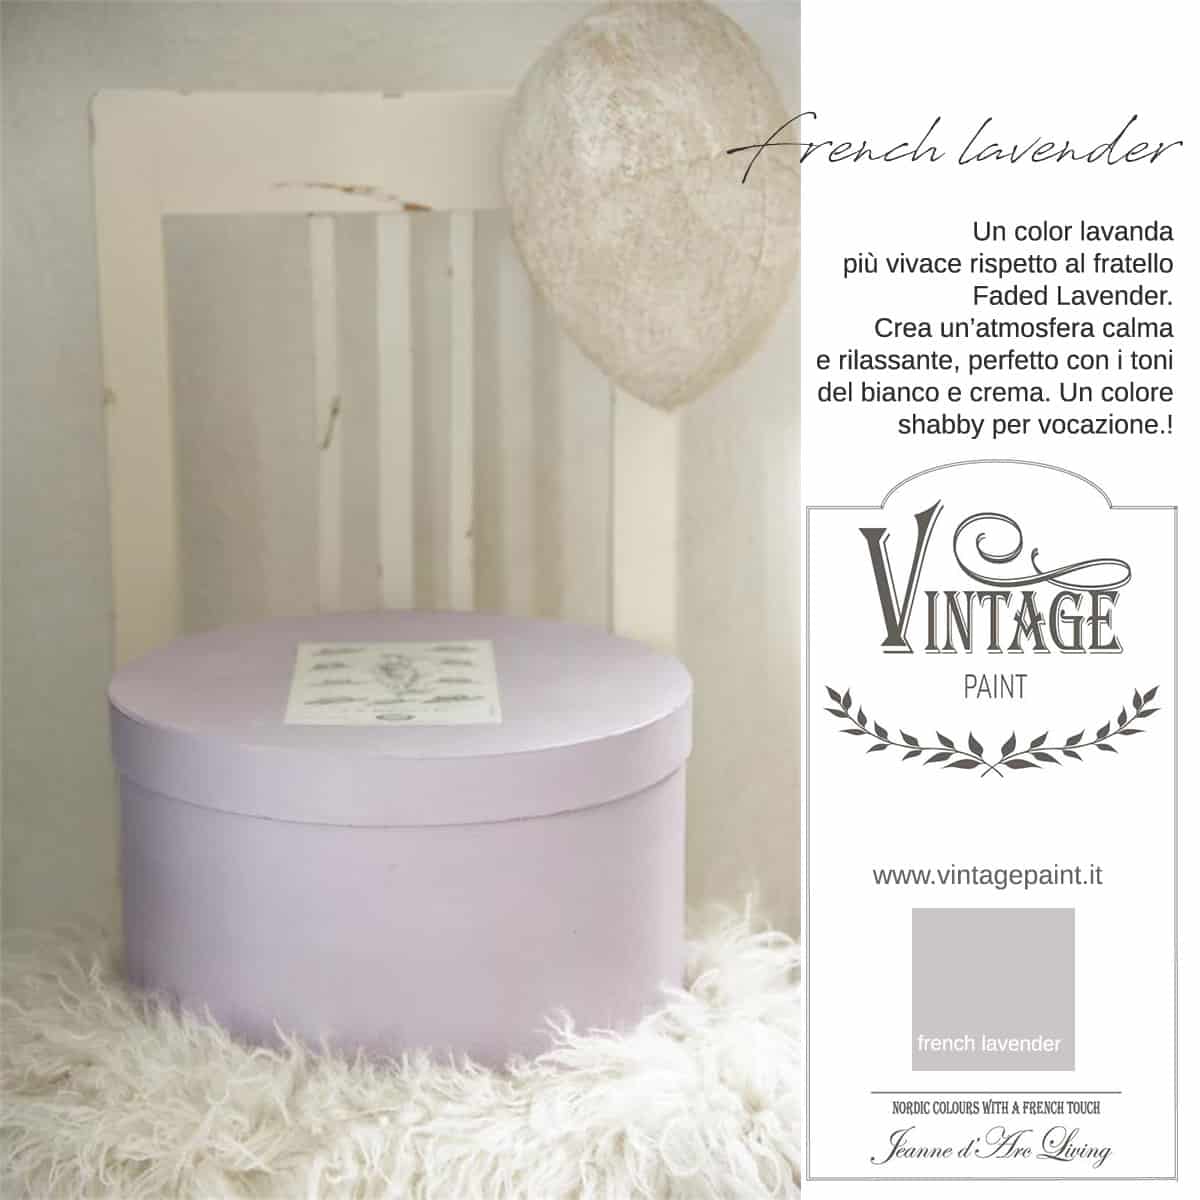 french lavender lavanda viola vintage chalk paint vernici shabby chic autentico look gesso